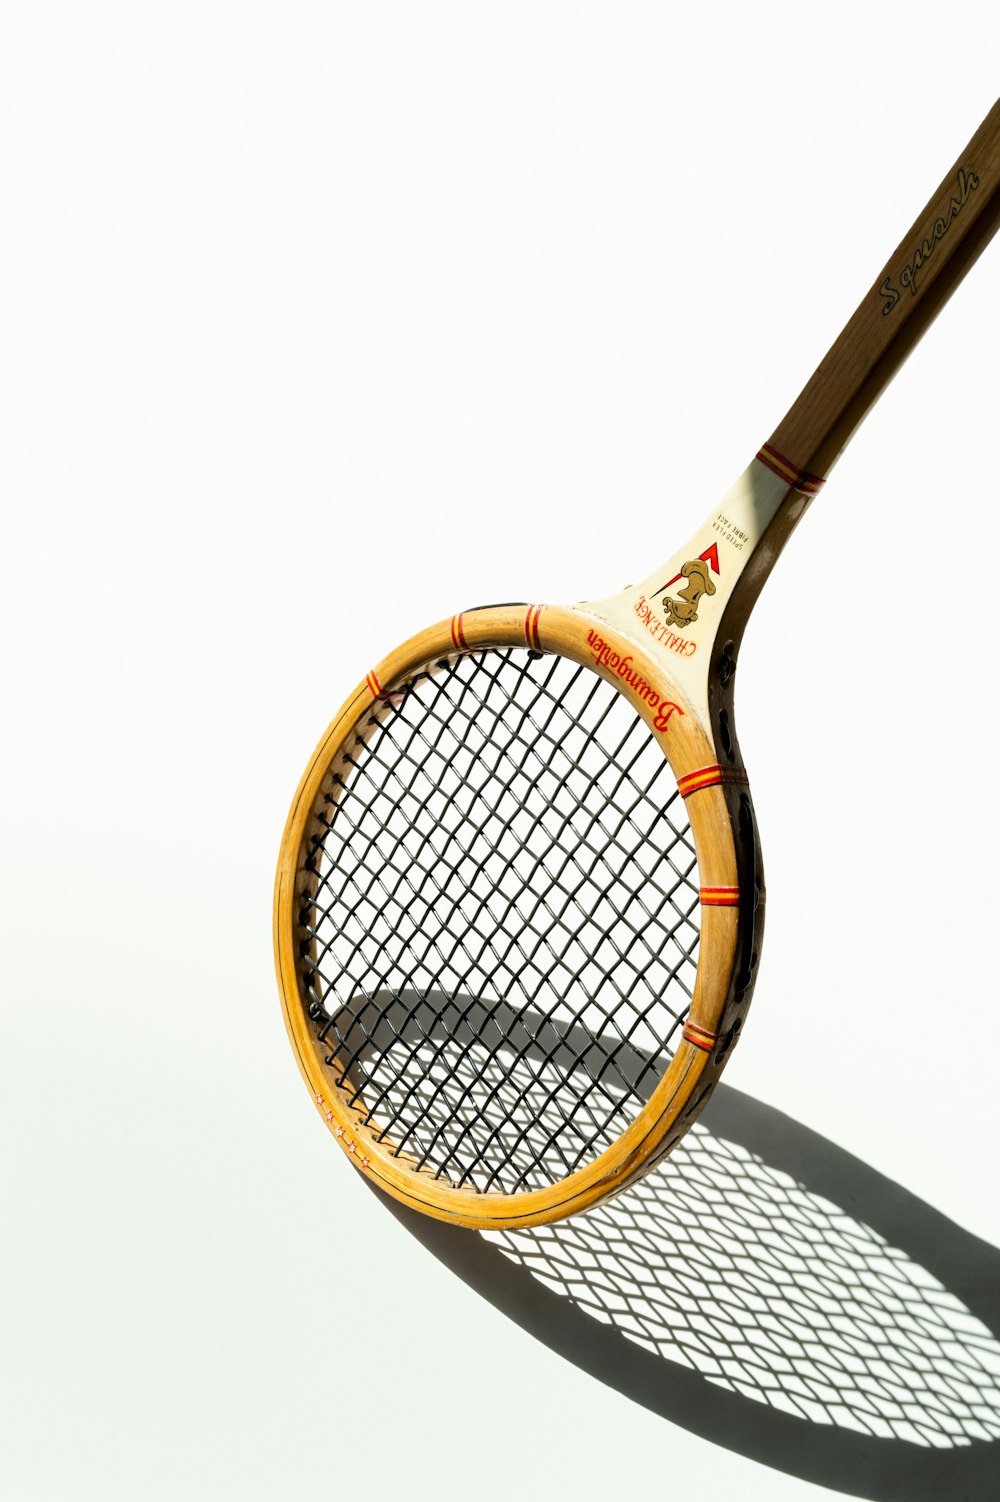 青と白のテニスラケット